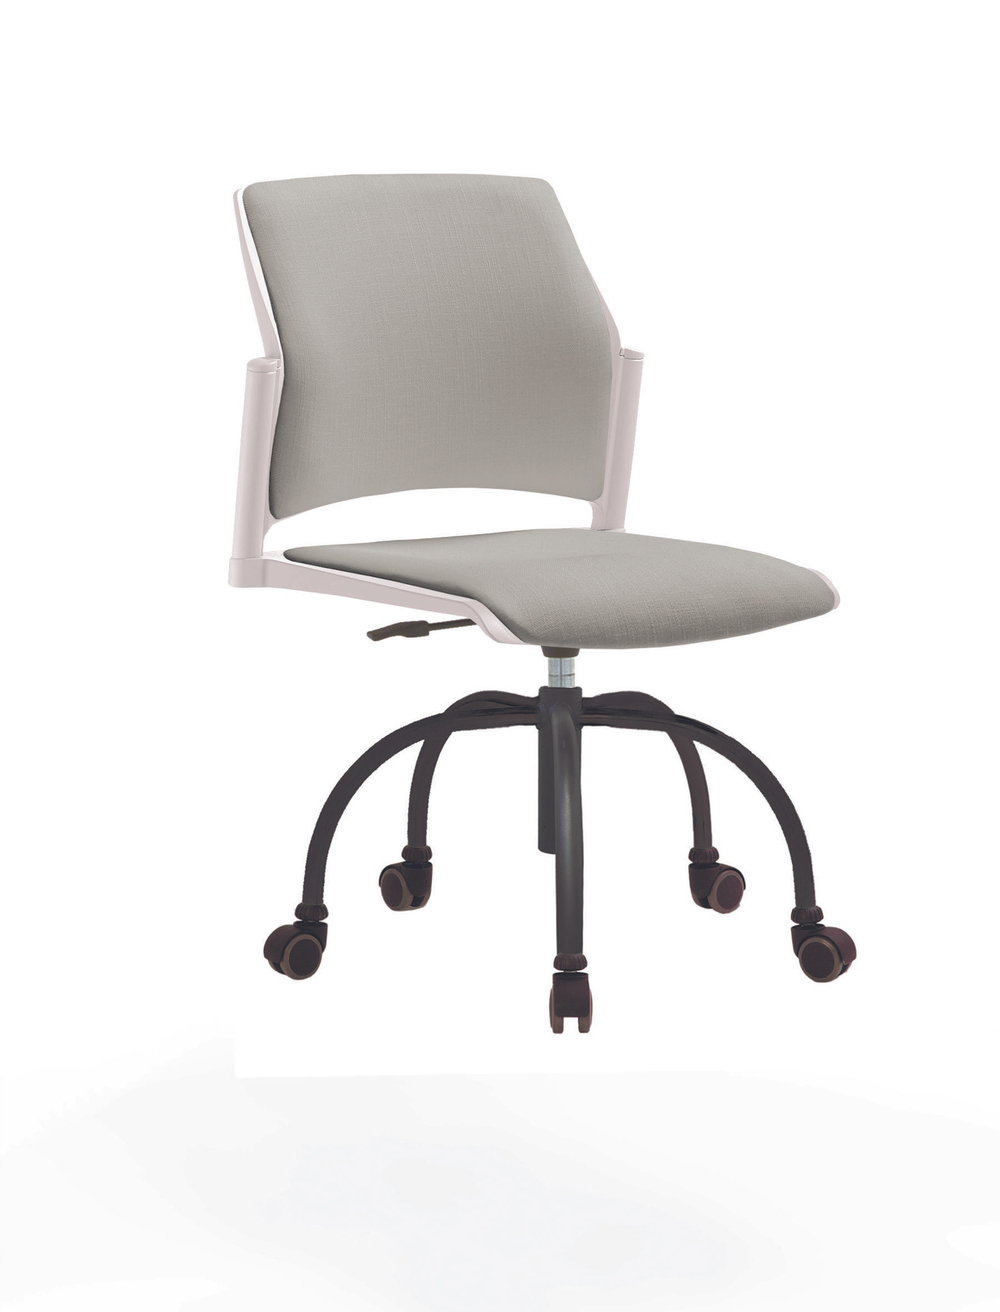 Кресло Rewind каркас черный, пластик белый, база паук краска черная, без подлокотников, сиденье и спинка светло-серые